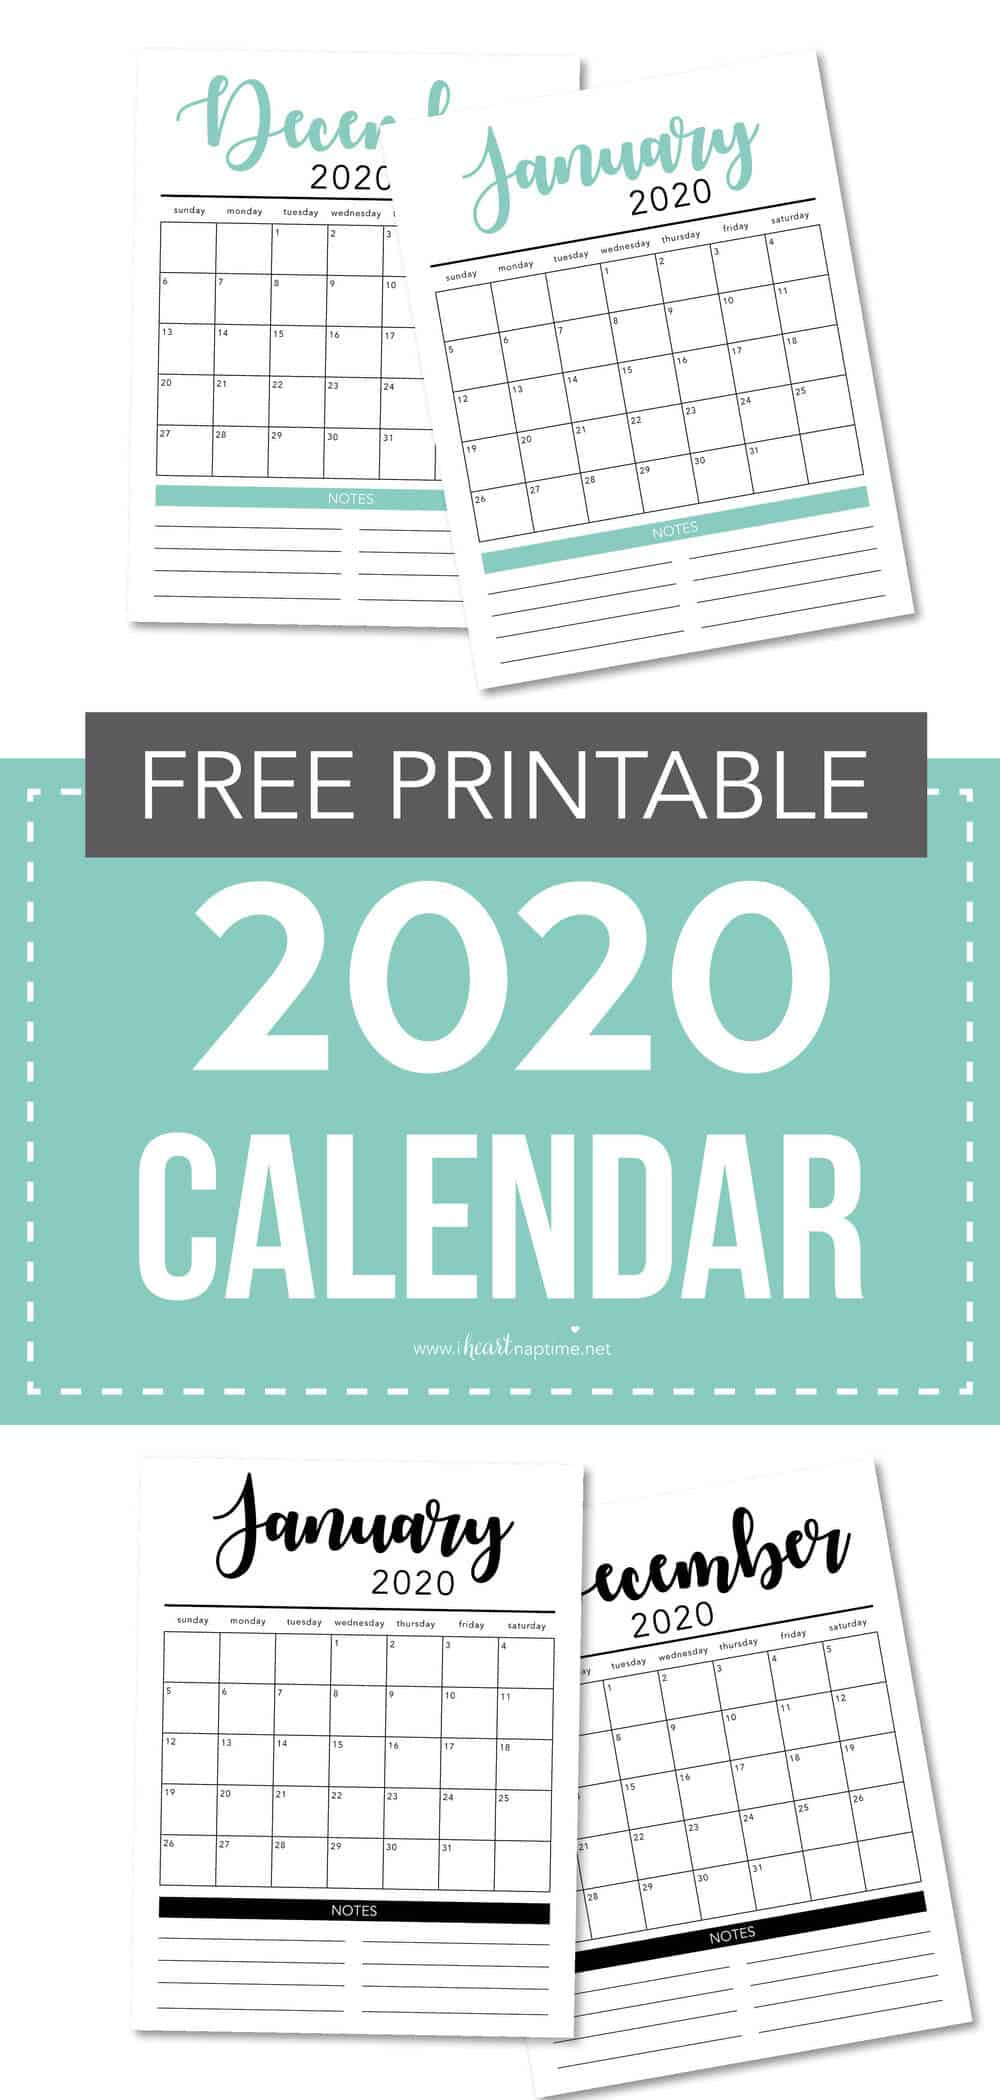 Mom Christmas Gifts 2020
 FREE 2020 Printable Calendar Template 2 colors I